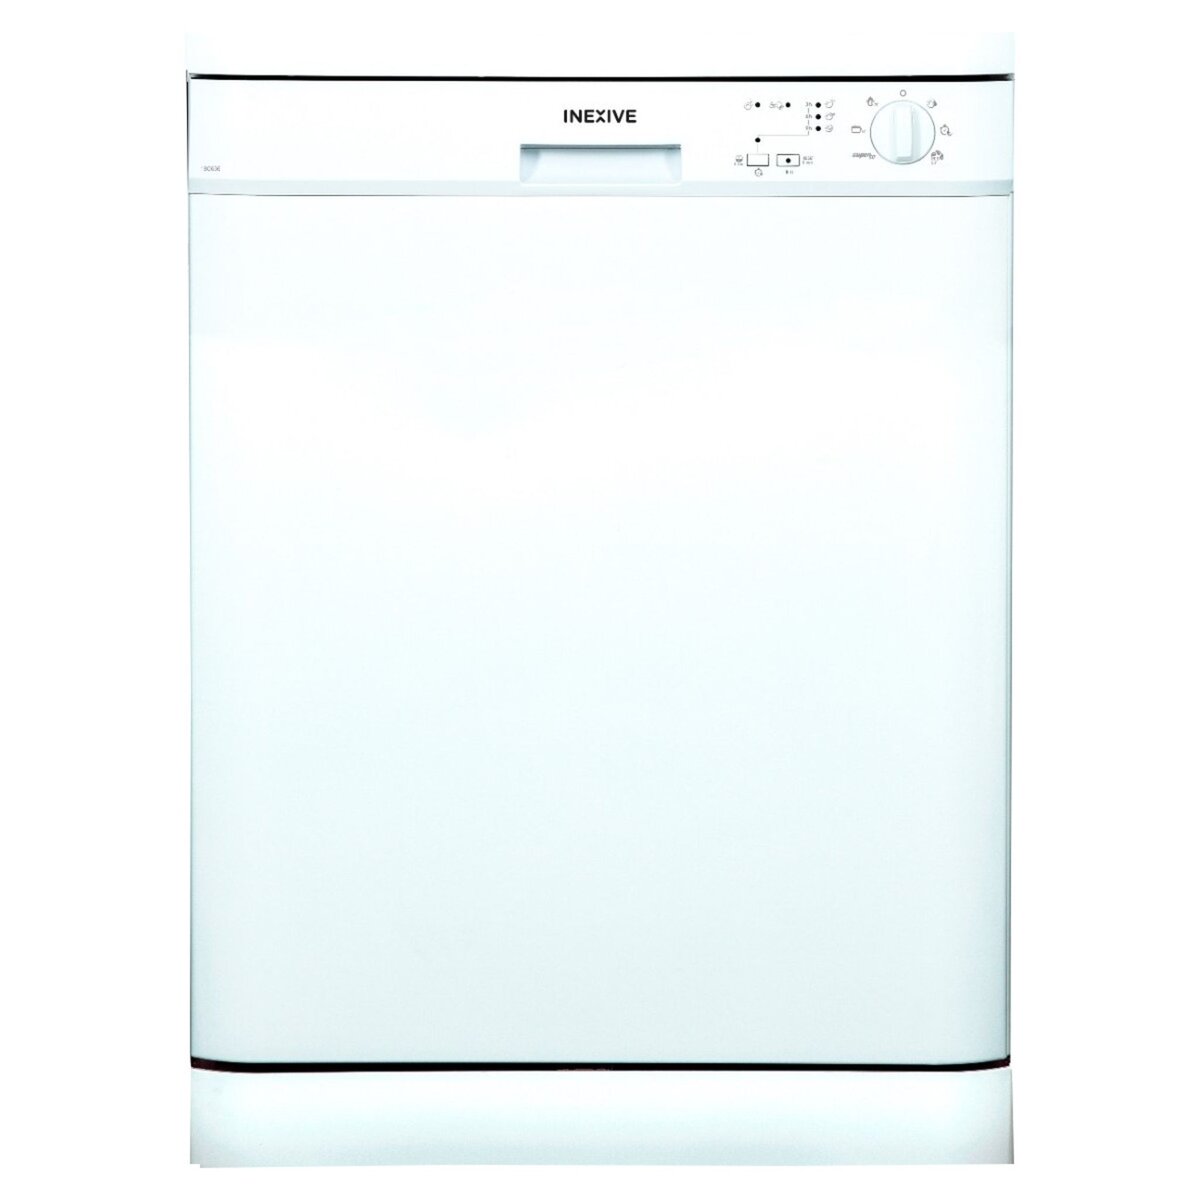 INEXIVE Lave-vaisselle pose libre 180636, 12 couverts, 60 cm, 47 dB, 6 Programmes